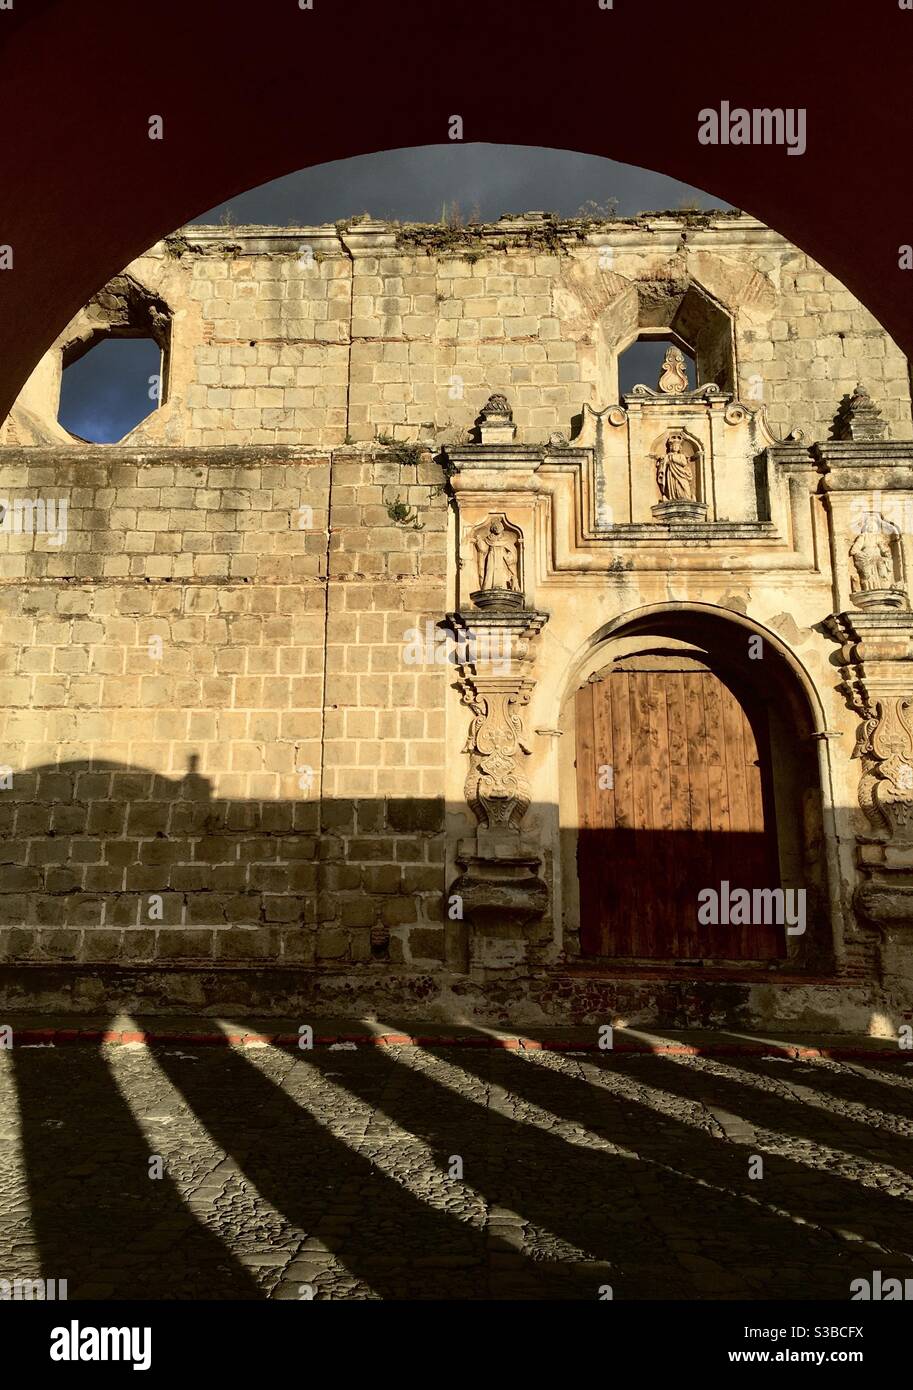 Lumière de l'après-midi et magie de l'ombre sur les rues pavées de l'ancienne Antigua coloniale espagnole, Guatemala Banque D'Images